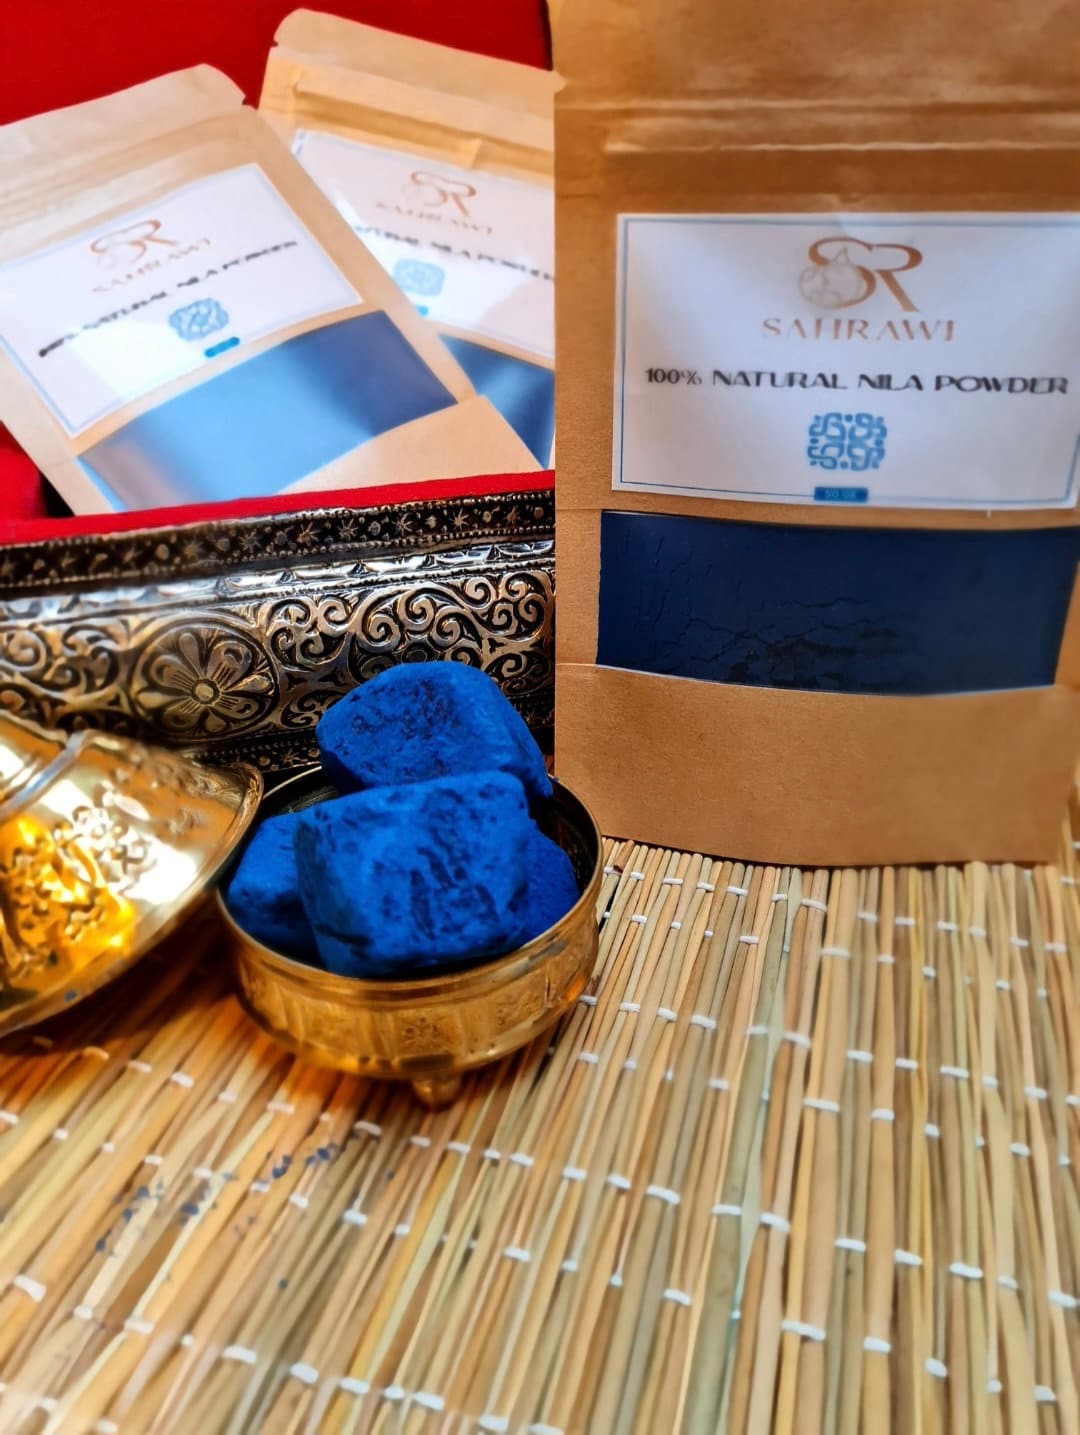 Pack Premium NILA, Coffret Royal au Nila Bleu Sahraouiya, Poudre